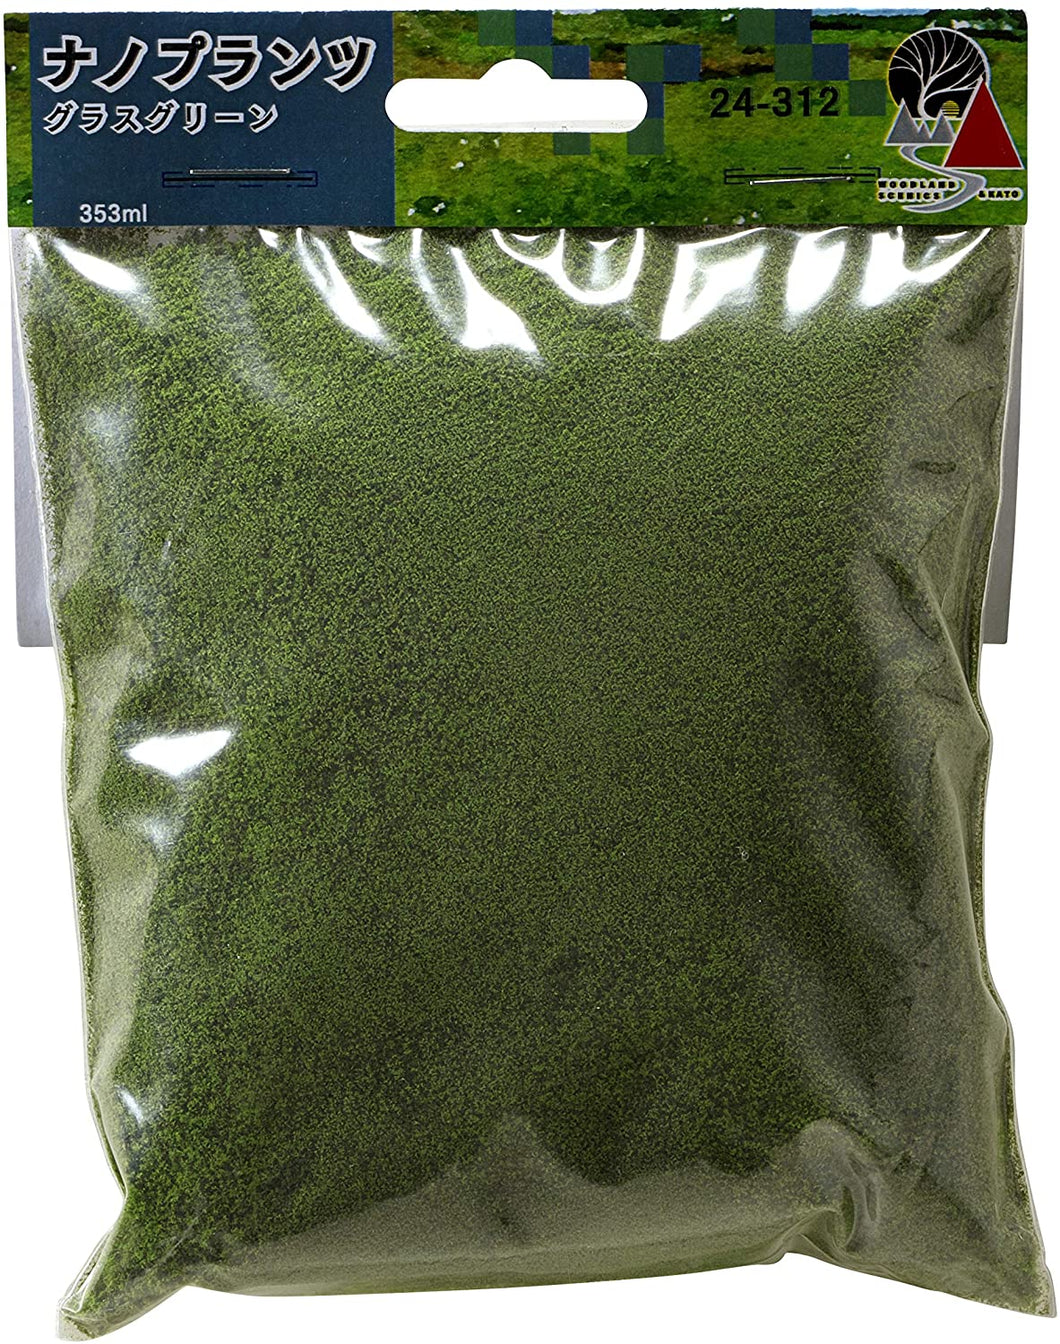 Kato 24-312 Nano Plants - Green Grass